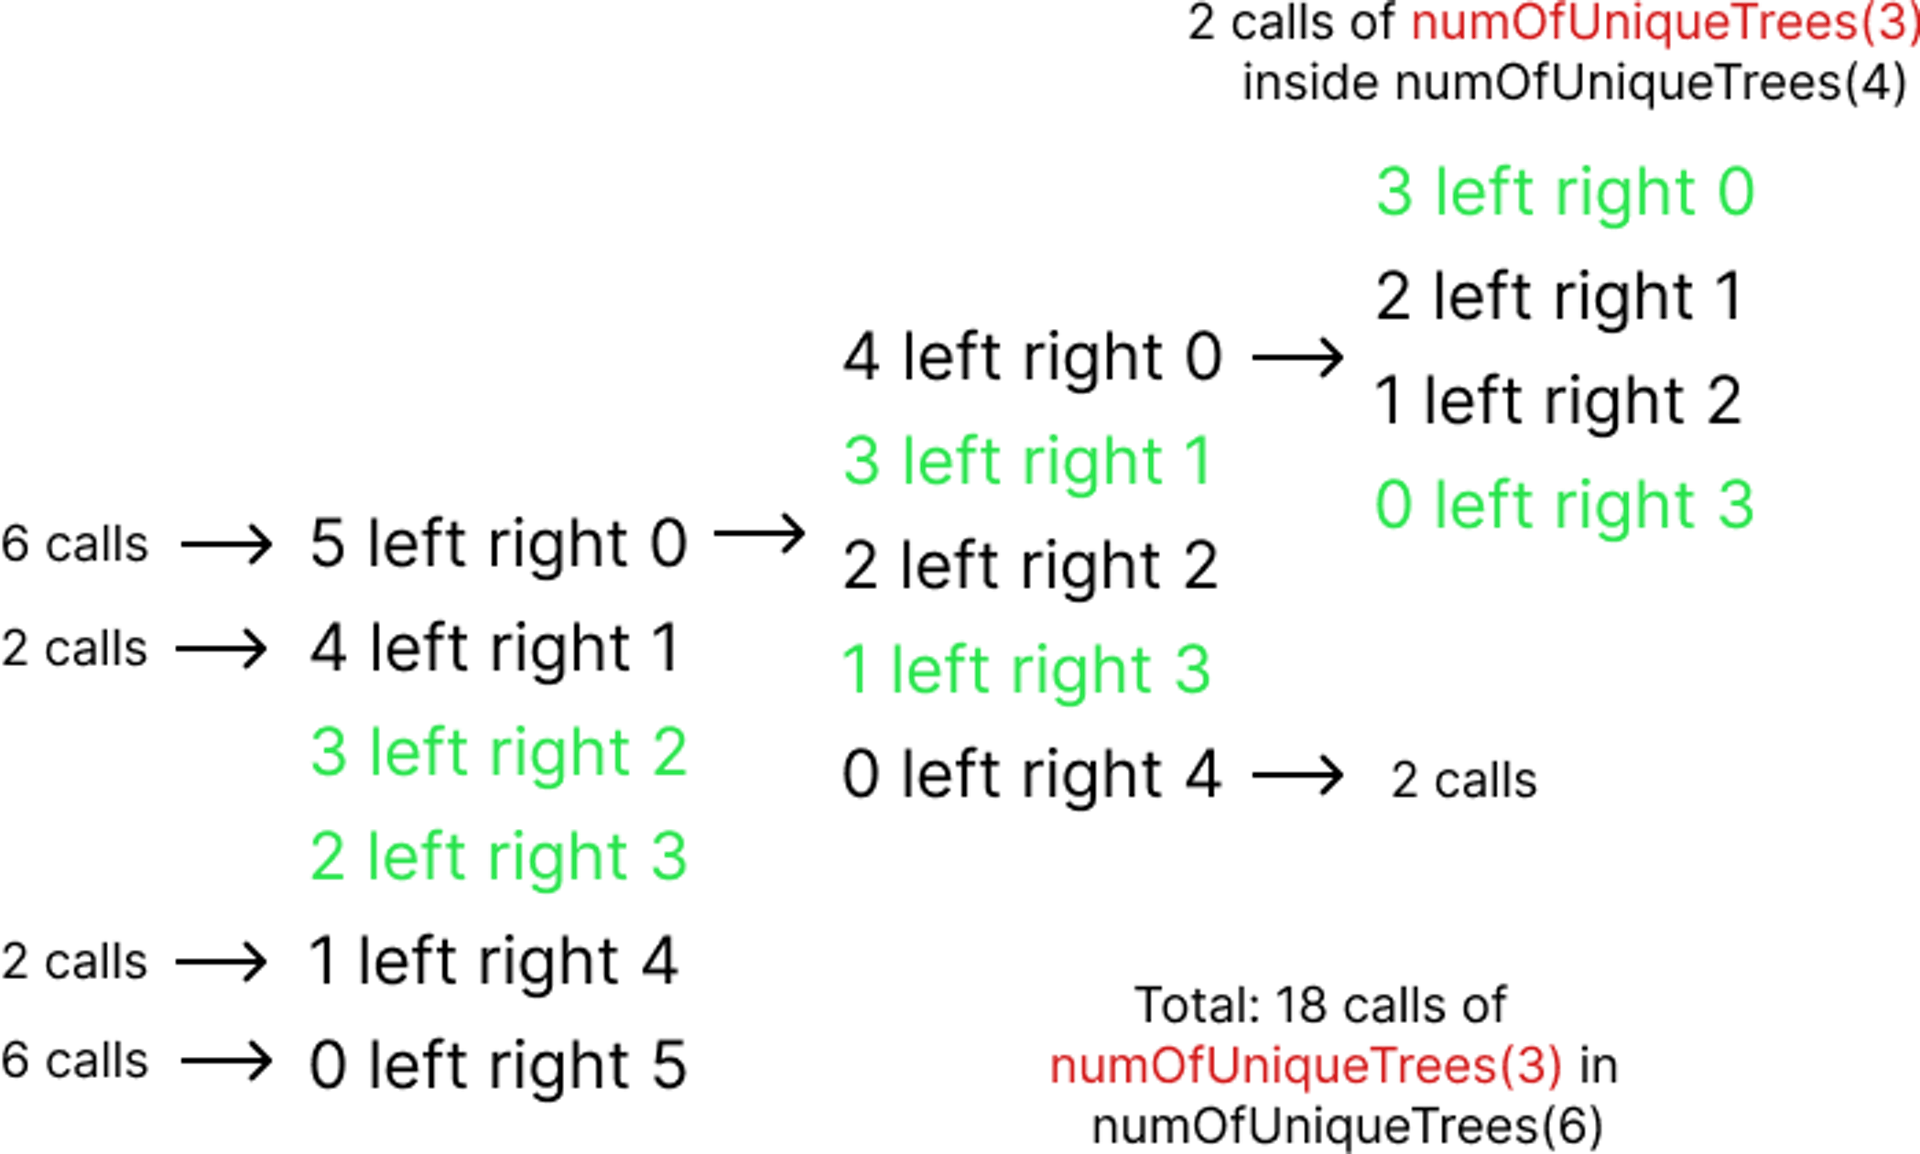 Lệnh gọi numOfUniqueTrees(3) trong tất cả các bản phân phối có N = 6